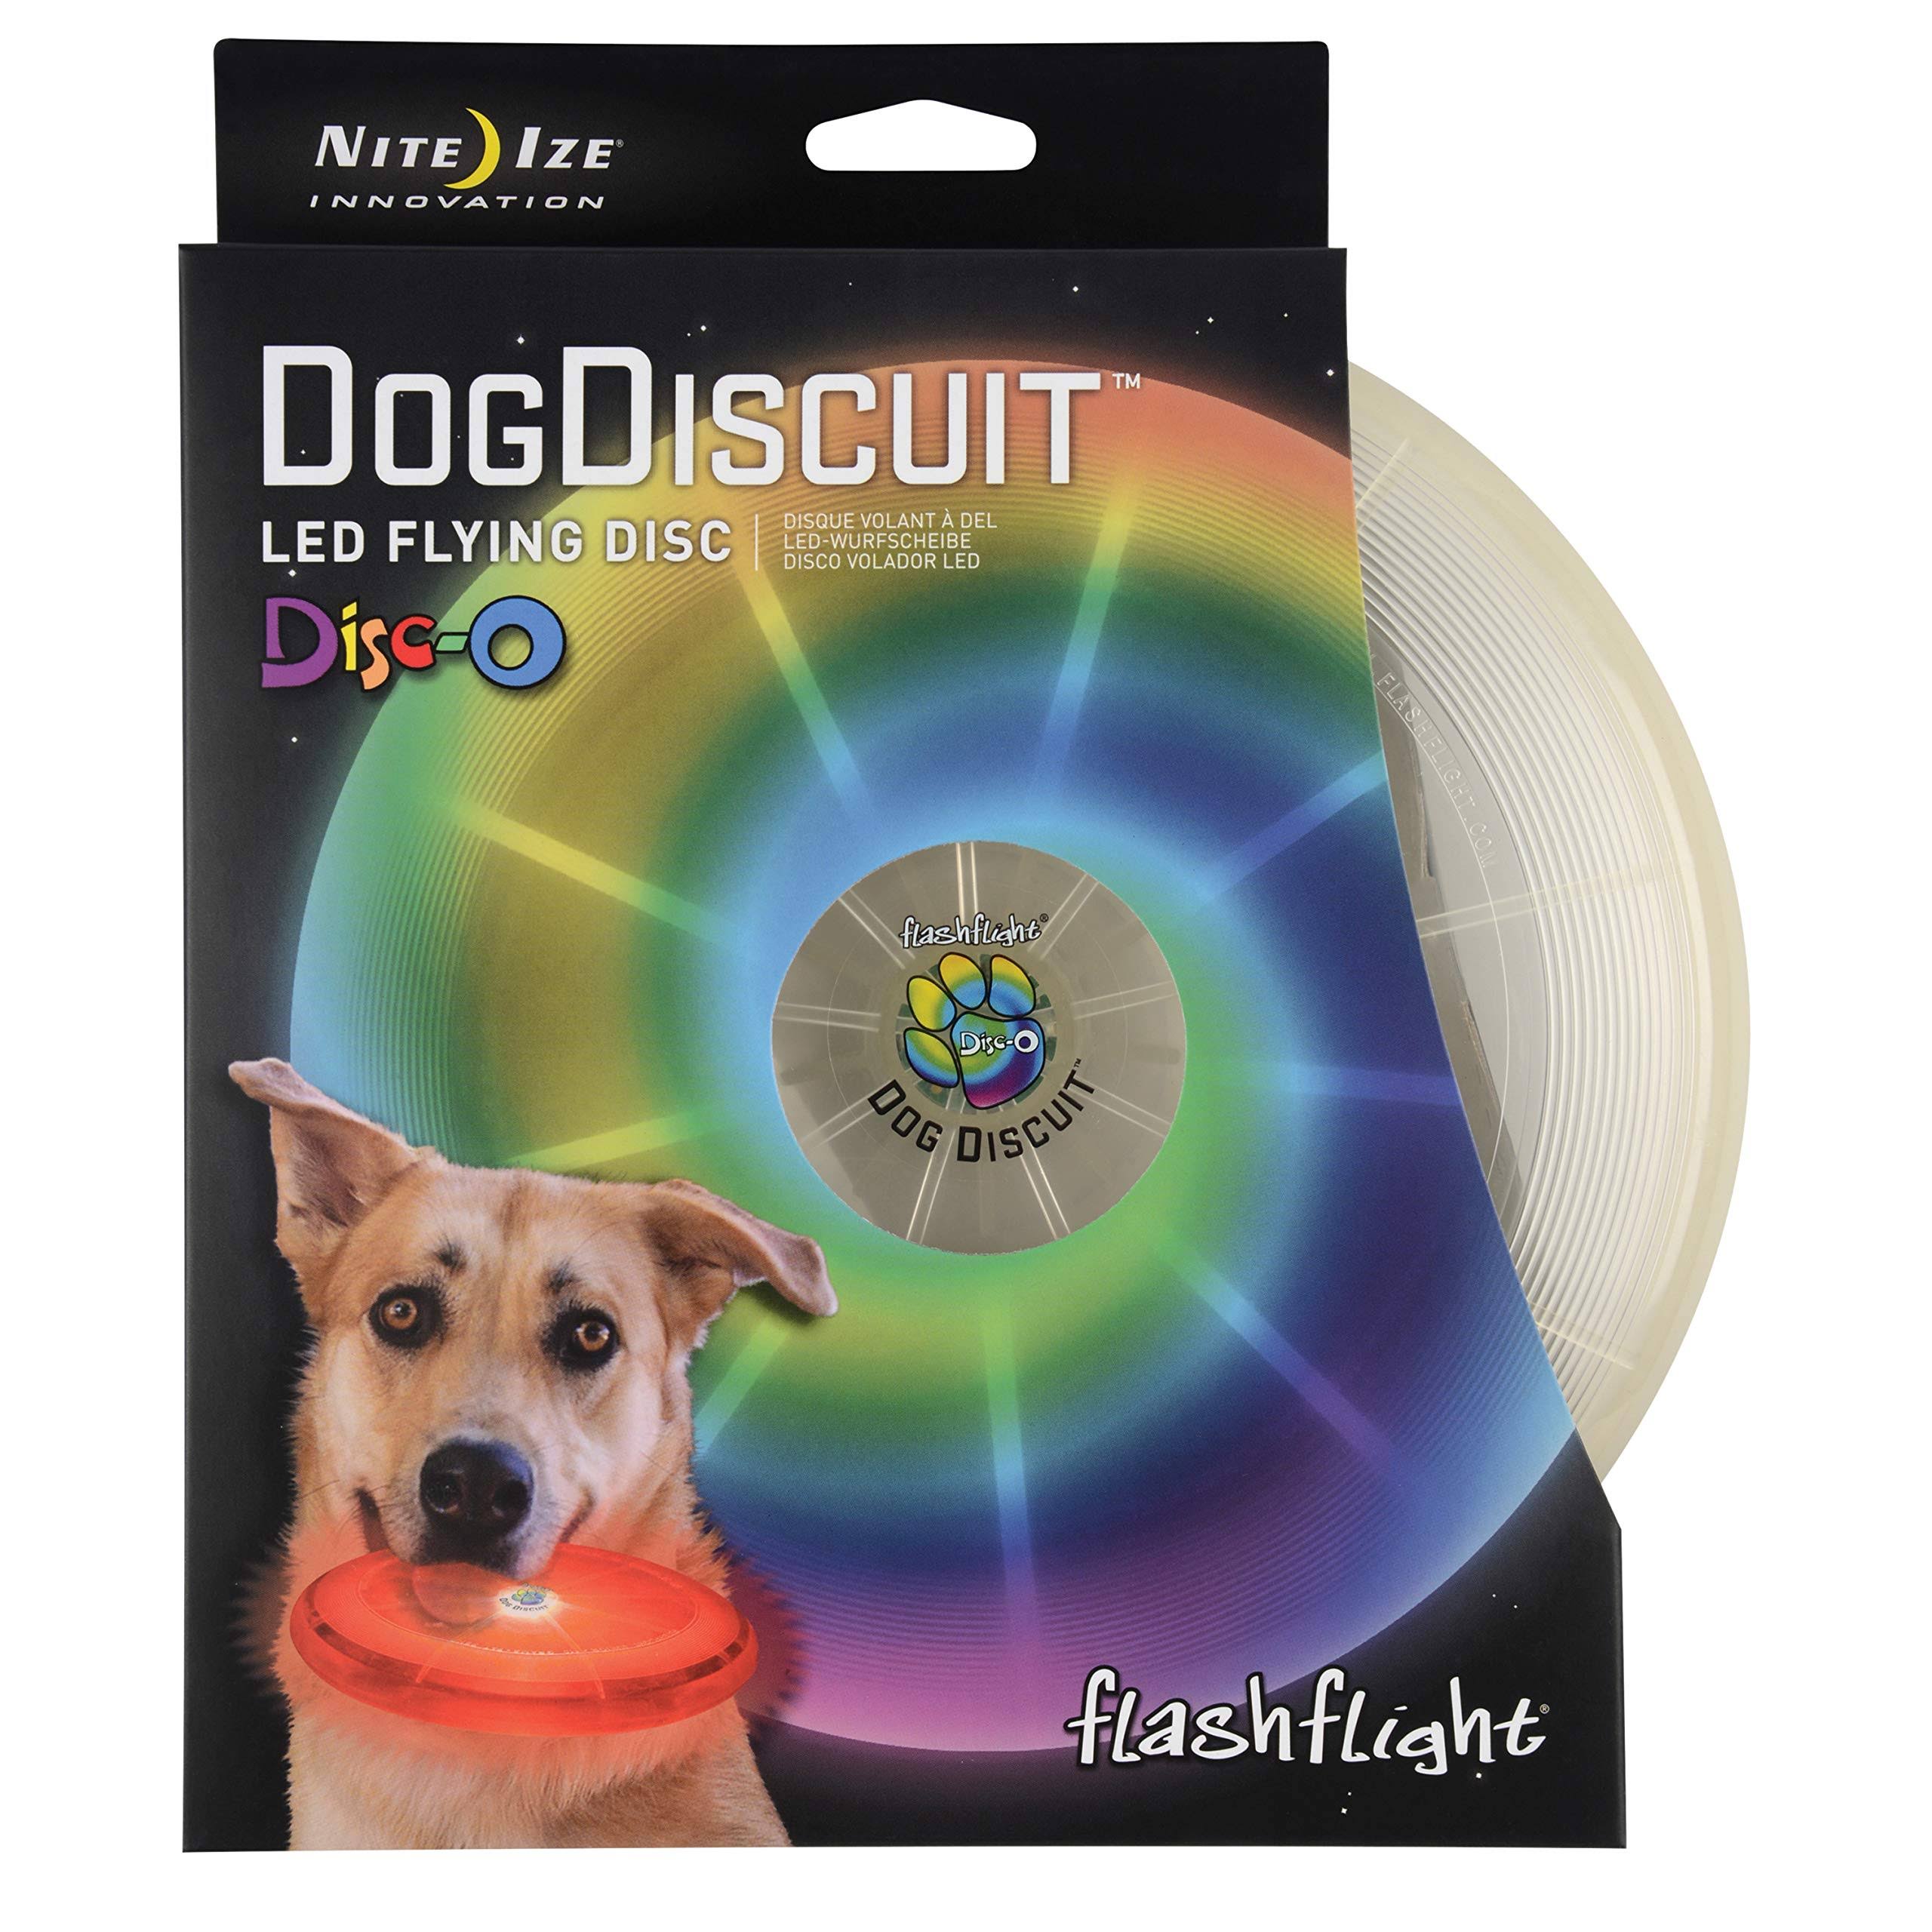 Nite Ize Flashflight LED Dog Discuit Disco - White, 7/16"